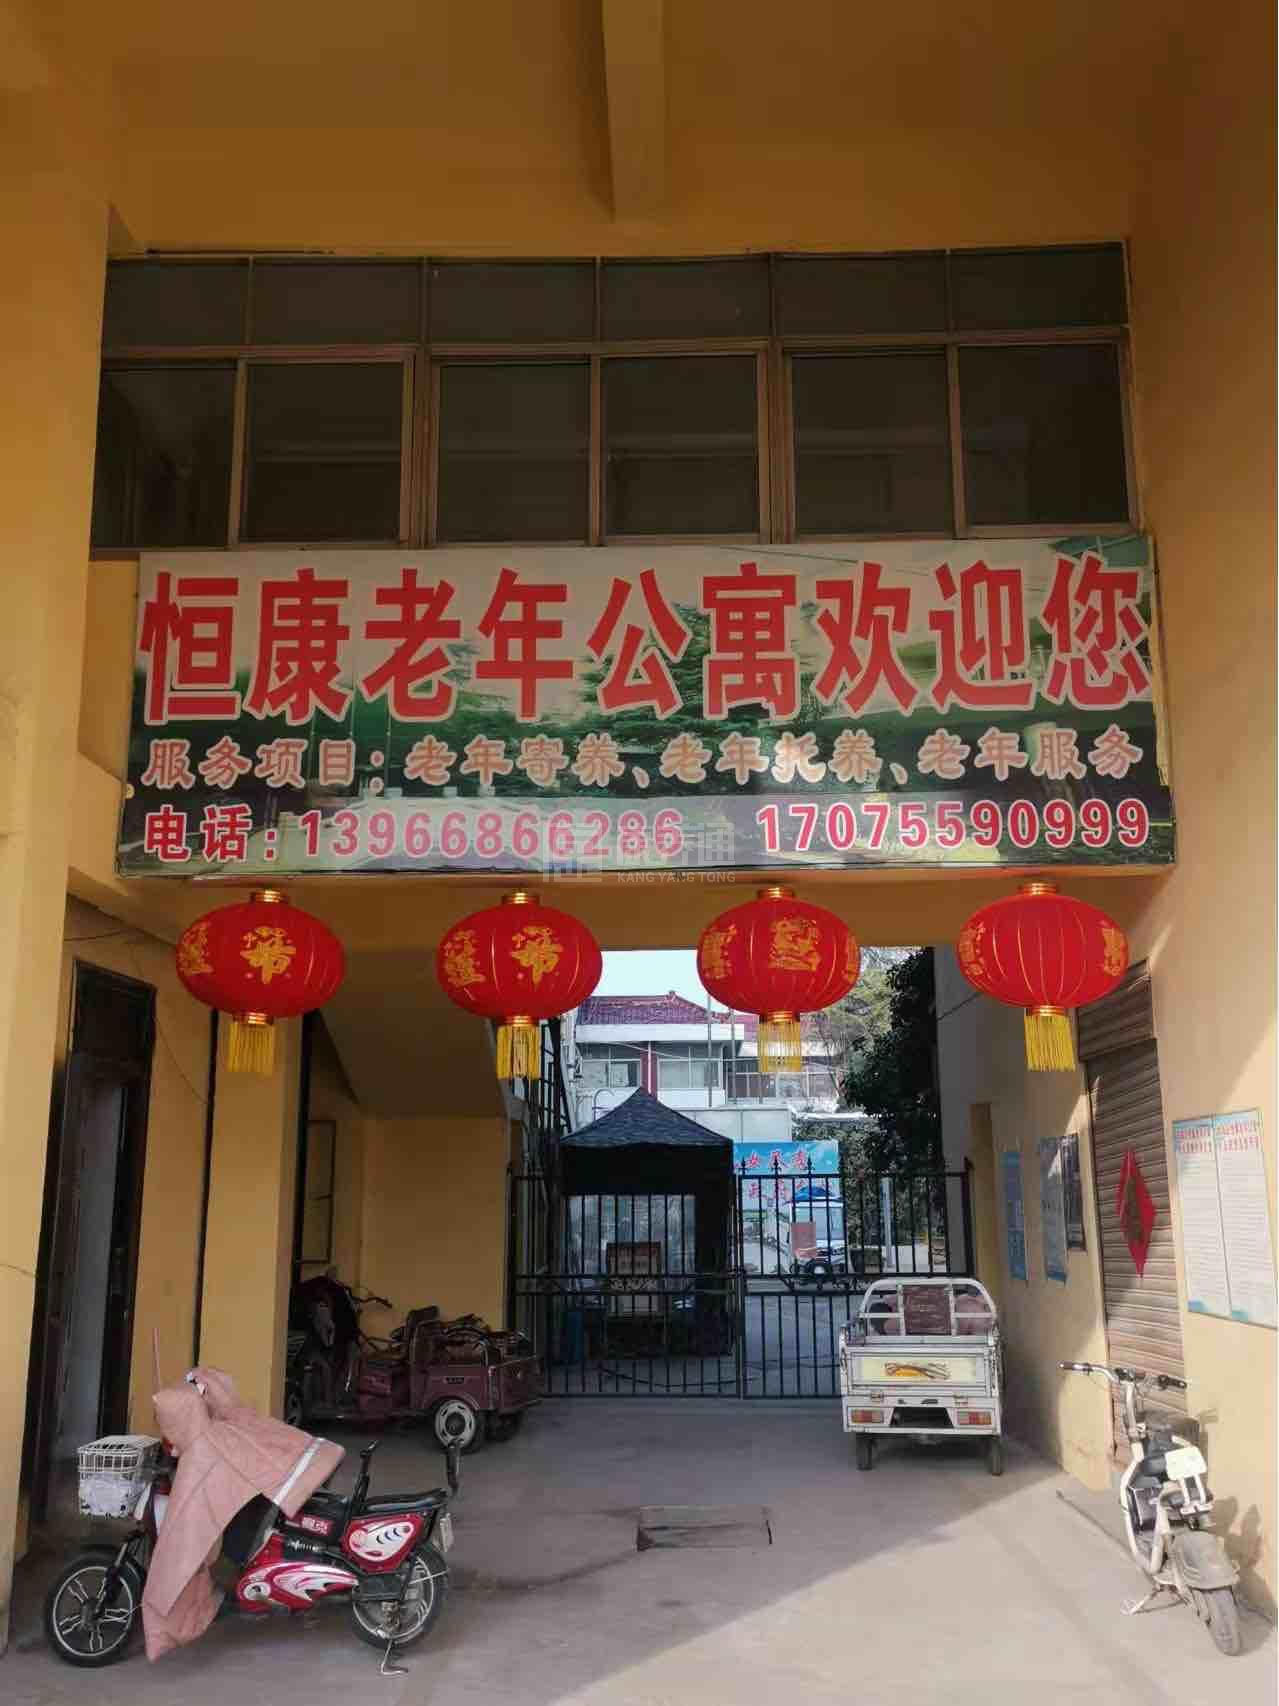 亳州市谯城区恒康老年公寓服务项目图6让长者体面而尊严地生活